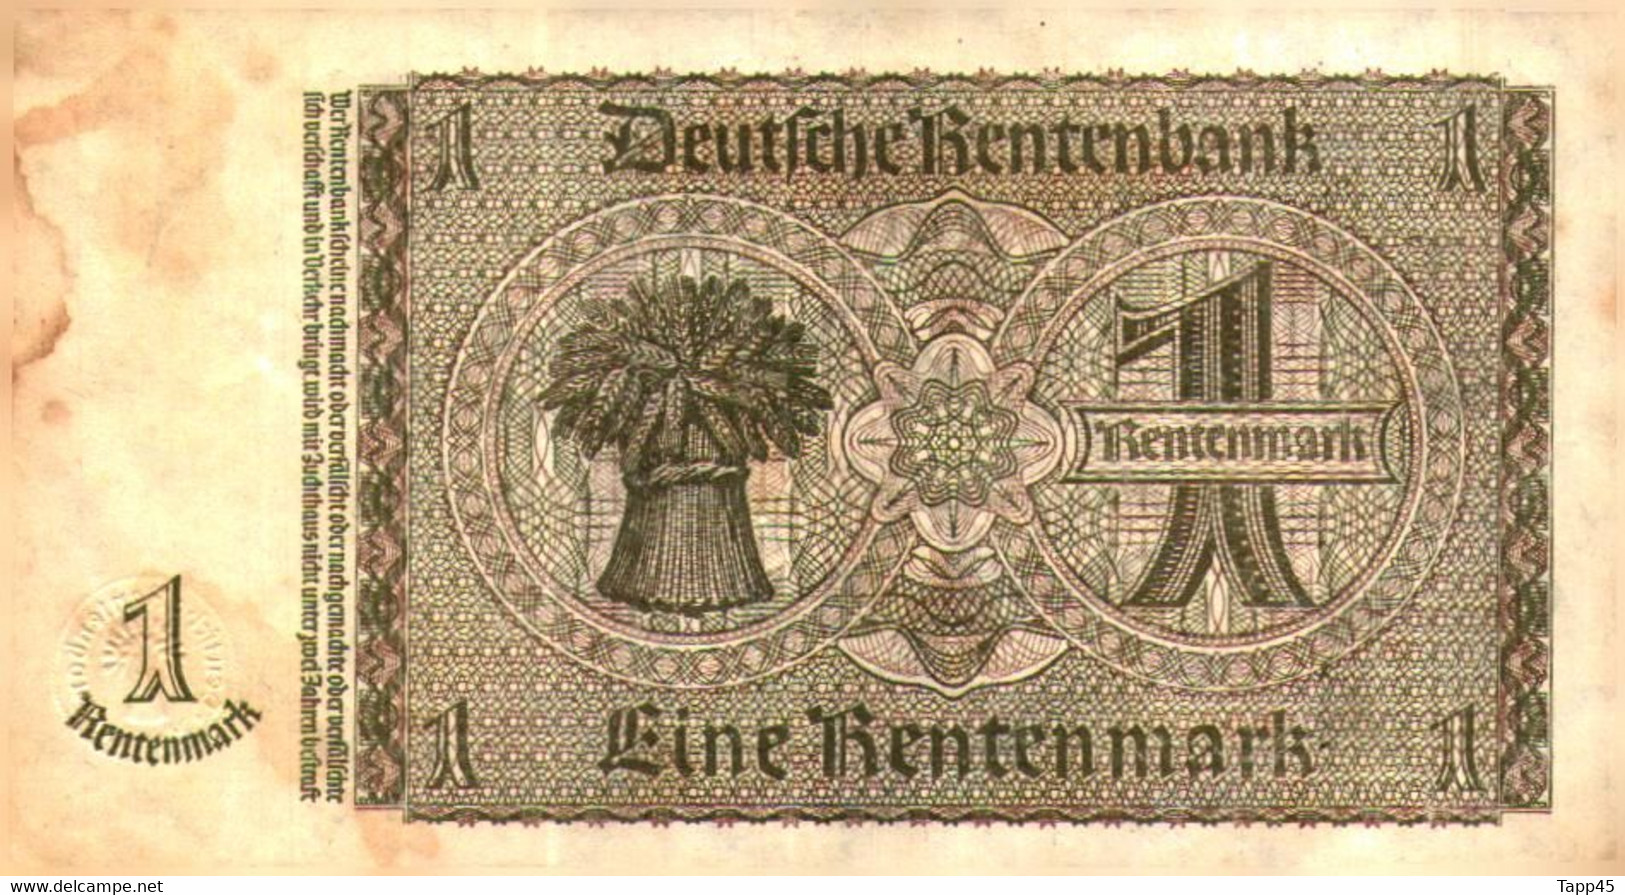 Billets > Allemagne >  1 Rentenmark  > C 04 - 1 Rentenmark